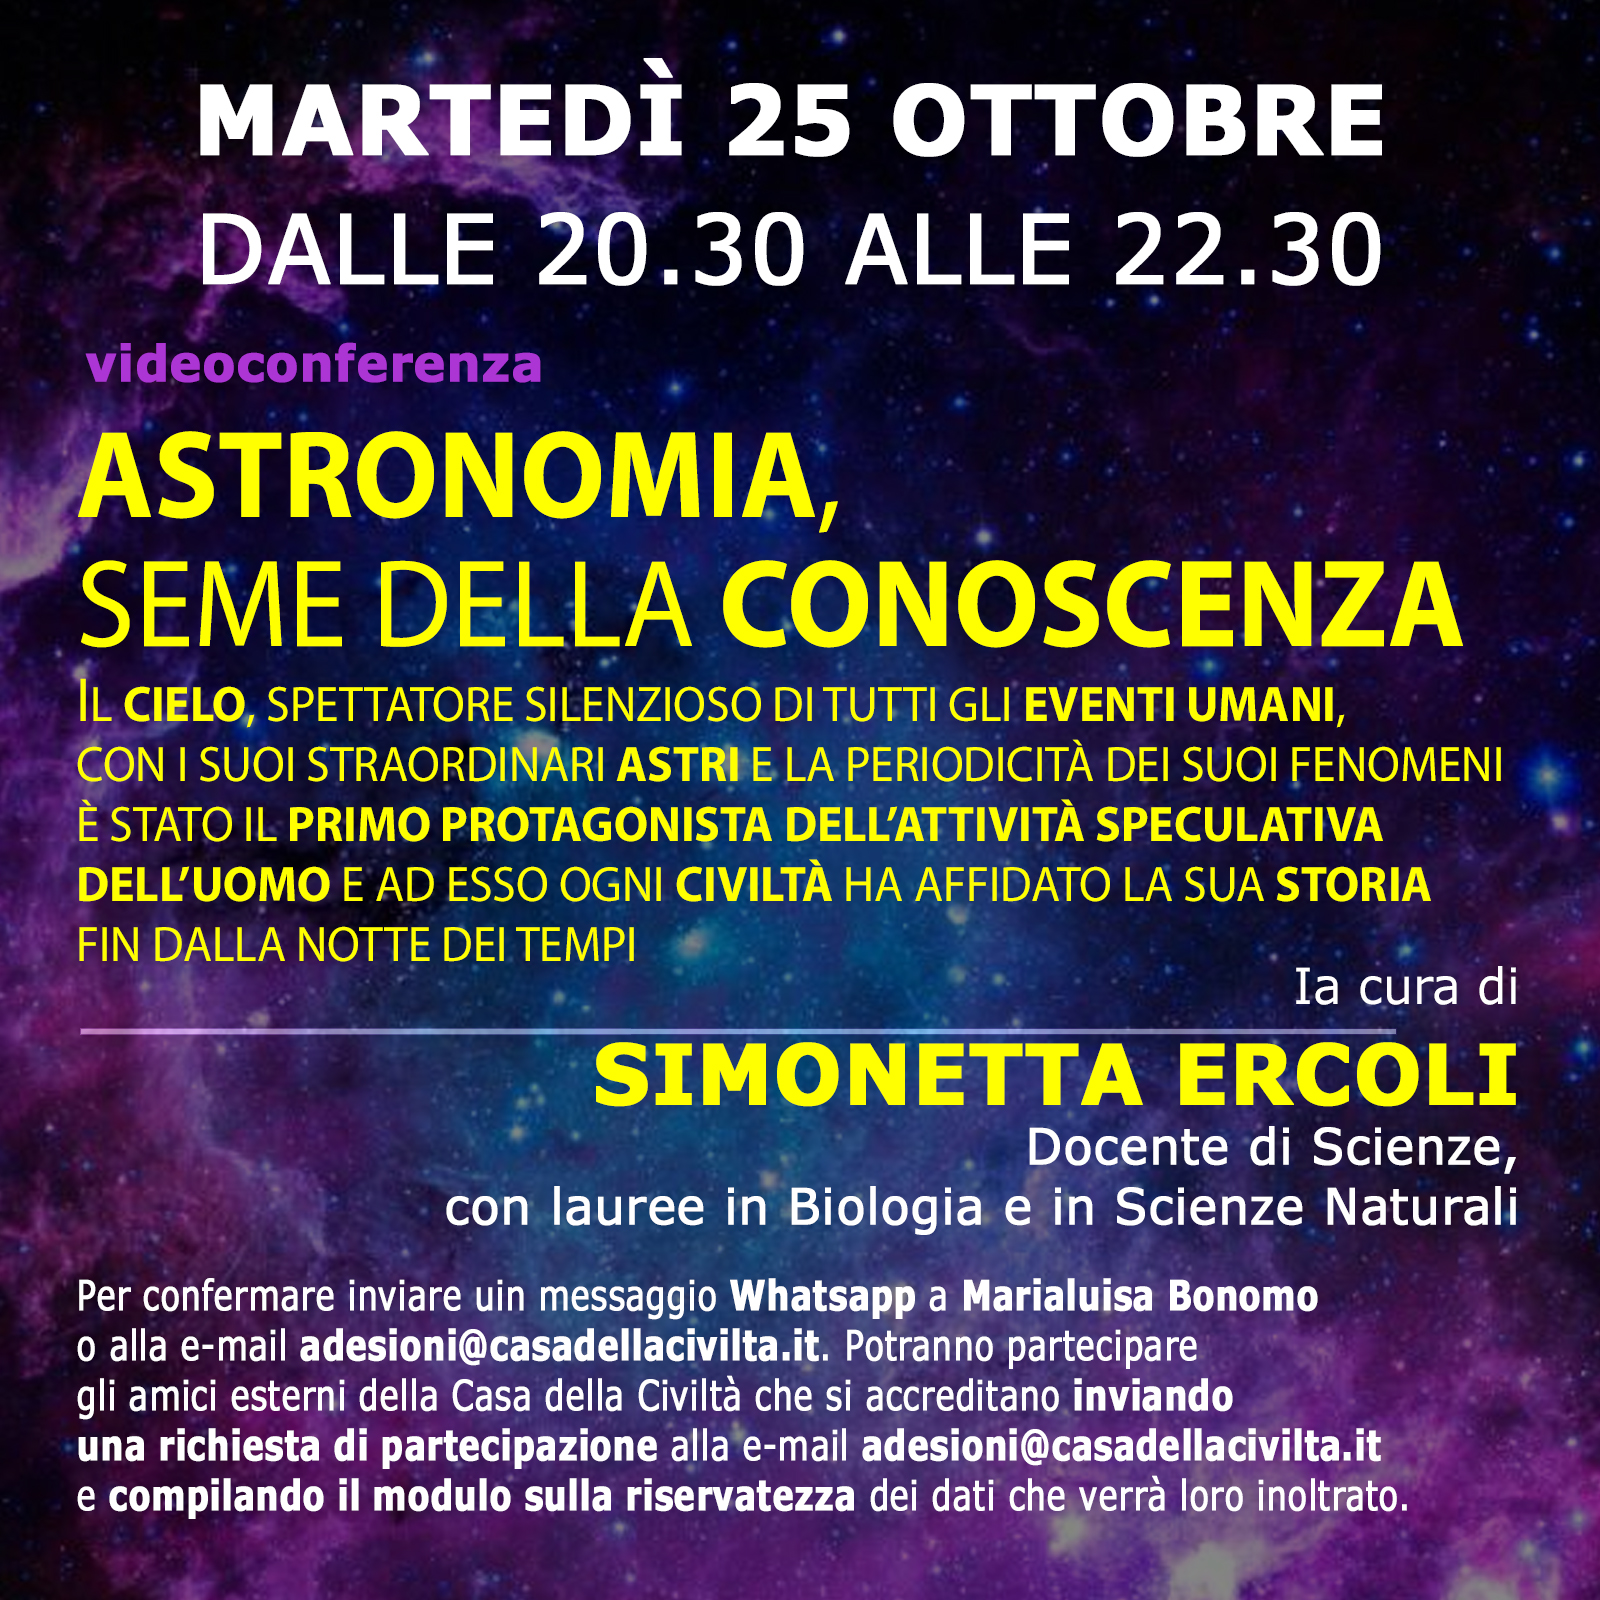 Videoconferenza oggi ore 20,30 con Simonetta  Ercoli su «Astronomia, seme della conoscenza». Per accreditarsi inviate la richiesta alla e-mail adesioni@casadellacivilta.it